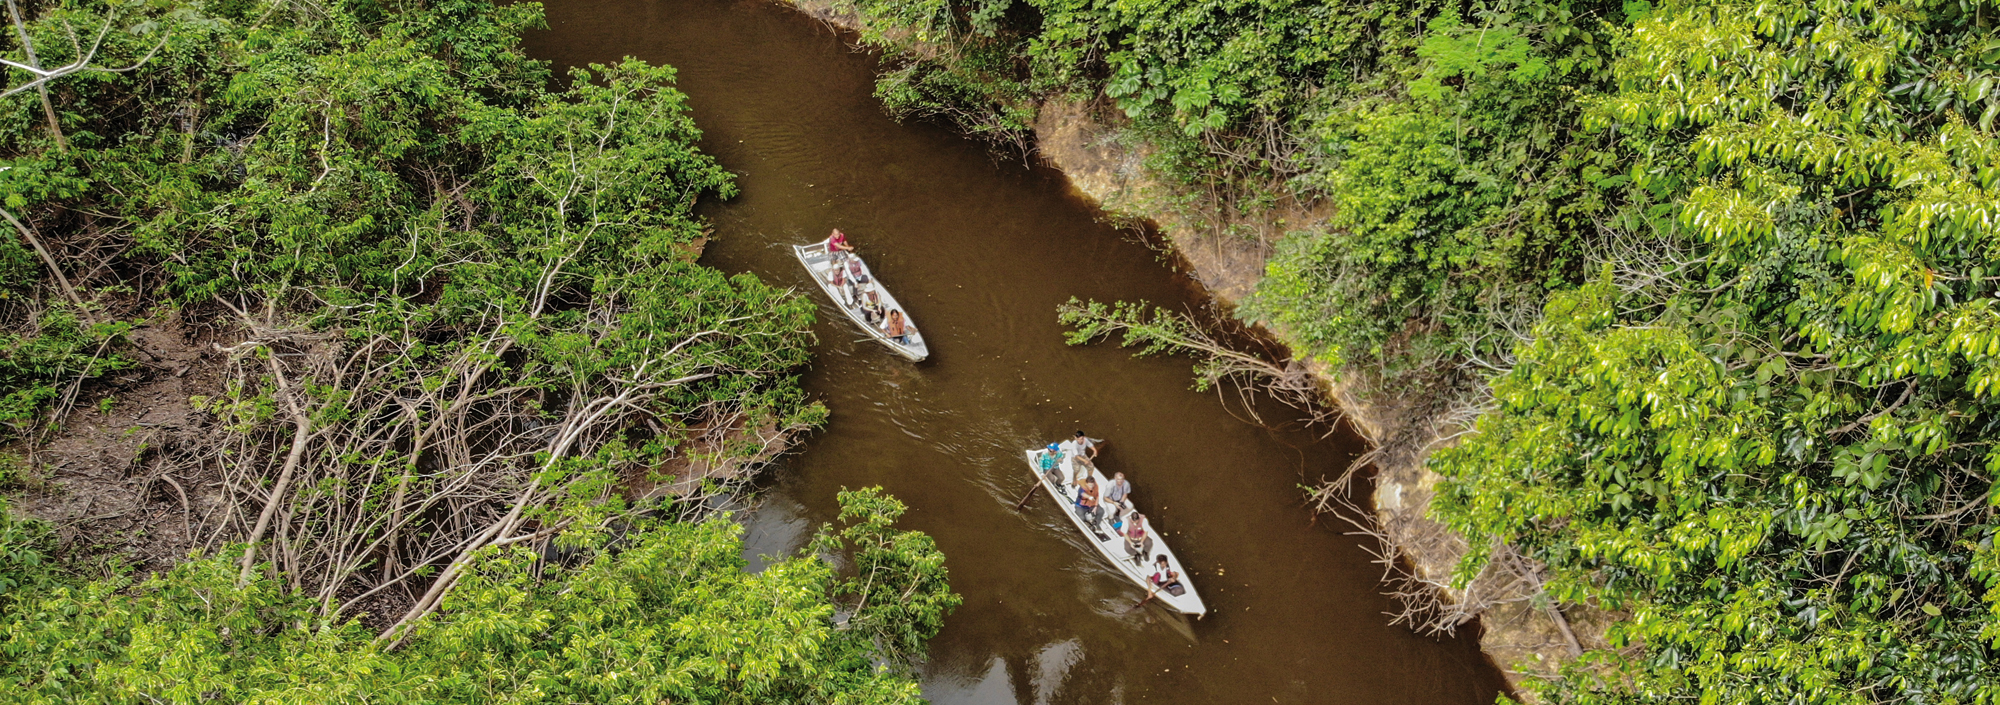 Boote im Regenwald von Guyana